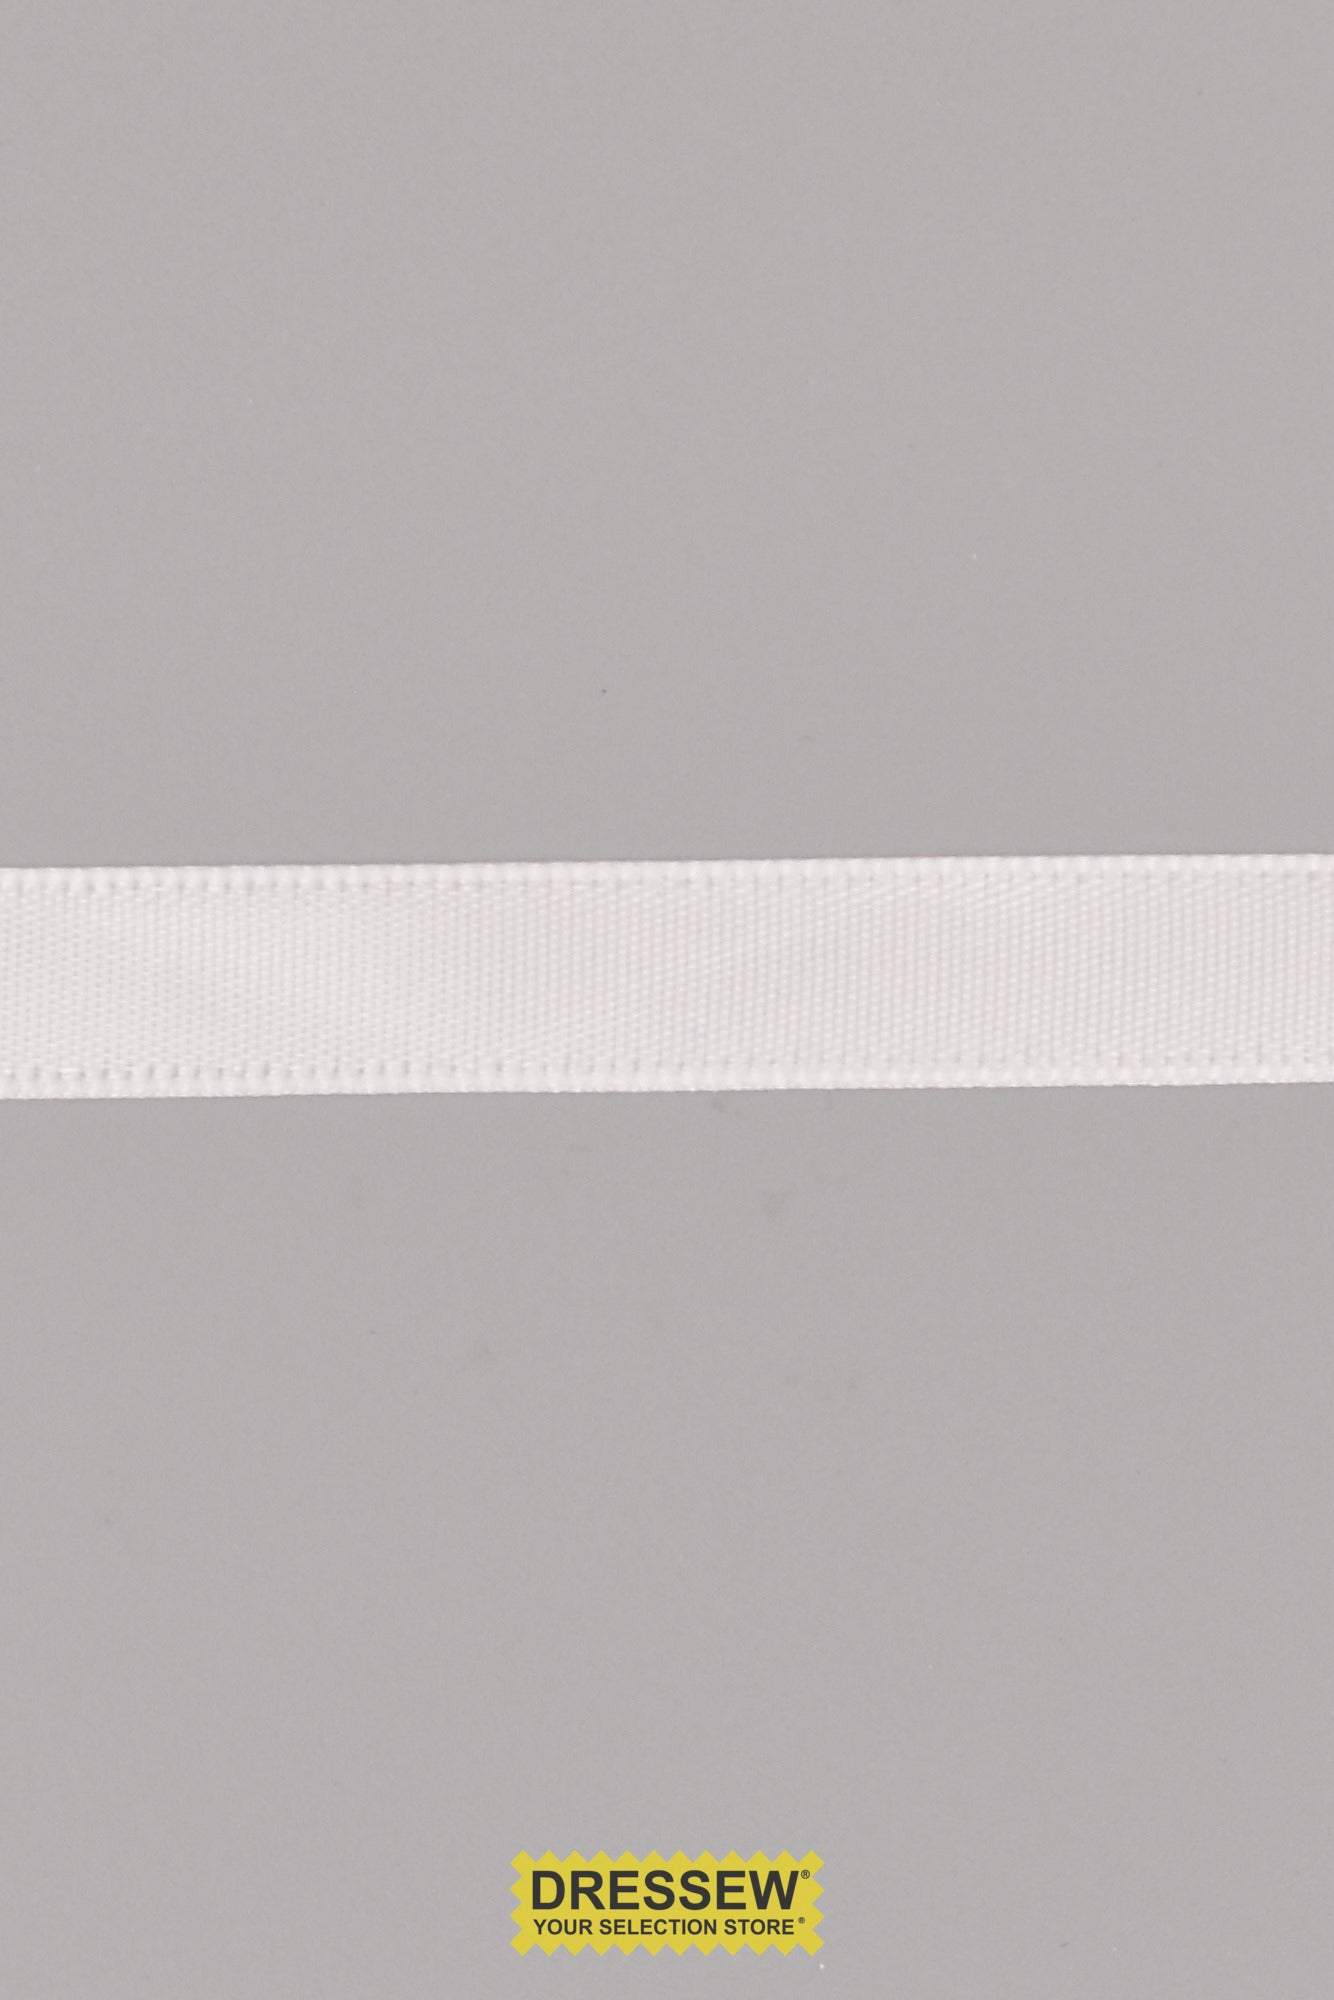 Single Face Satin Ribbon 9mm (3/8") White